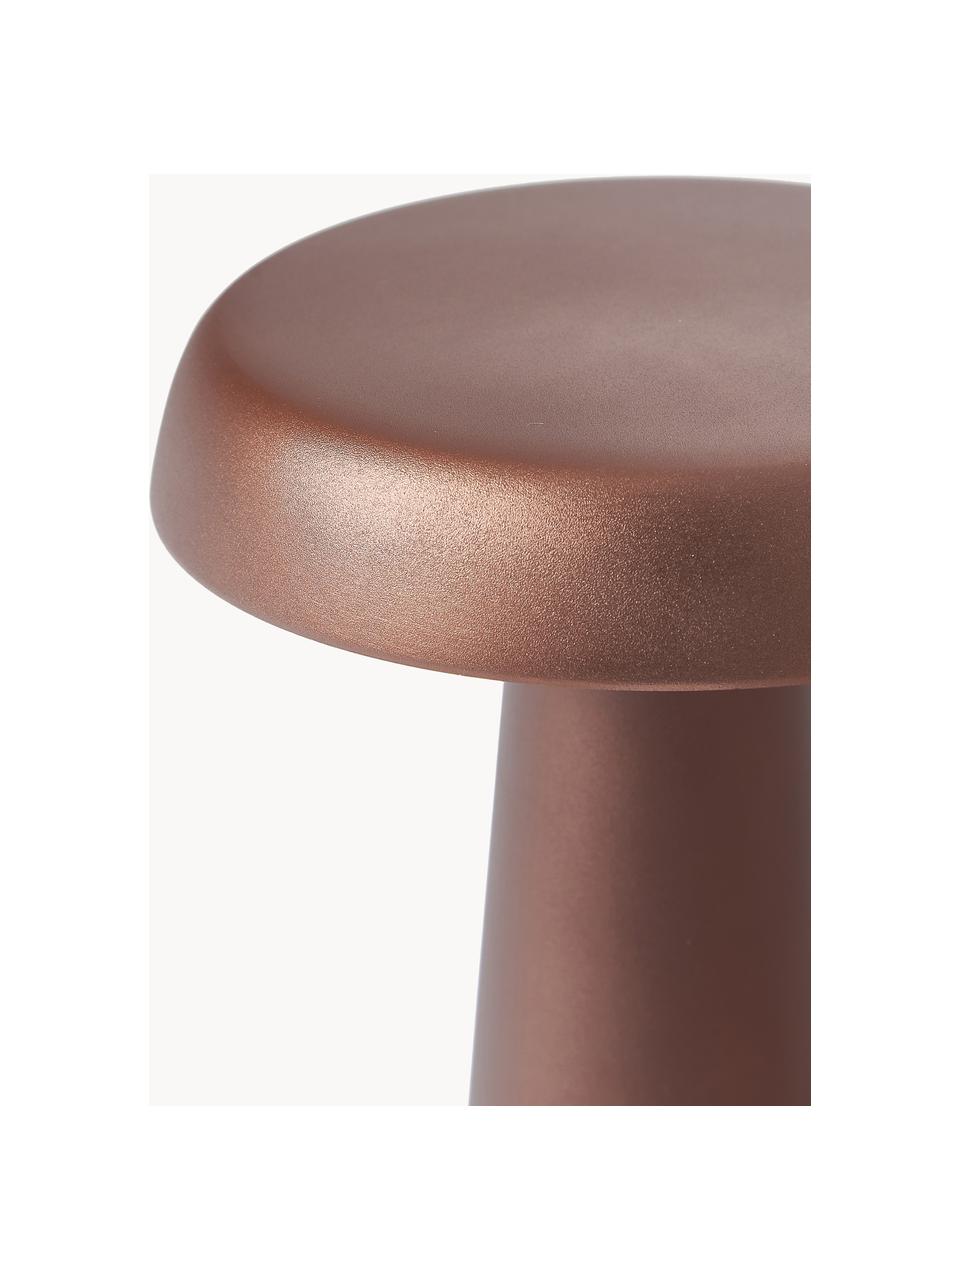 Lampada da tavolo da esterno a LED Arcello, Metallo anodizzato, Rosso marrone, Ø 14 x Alt. 25 cm